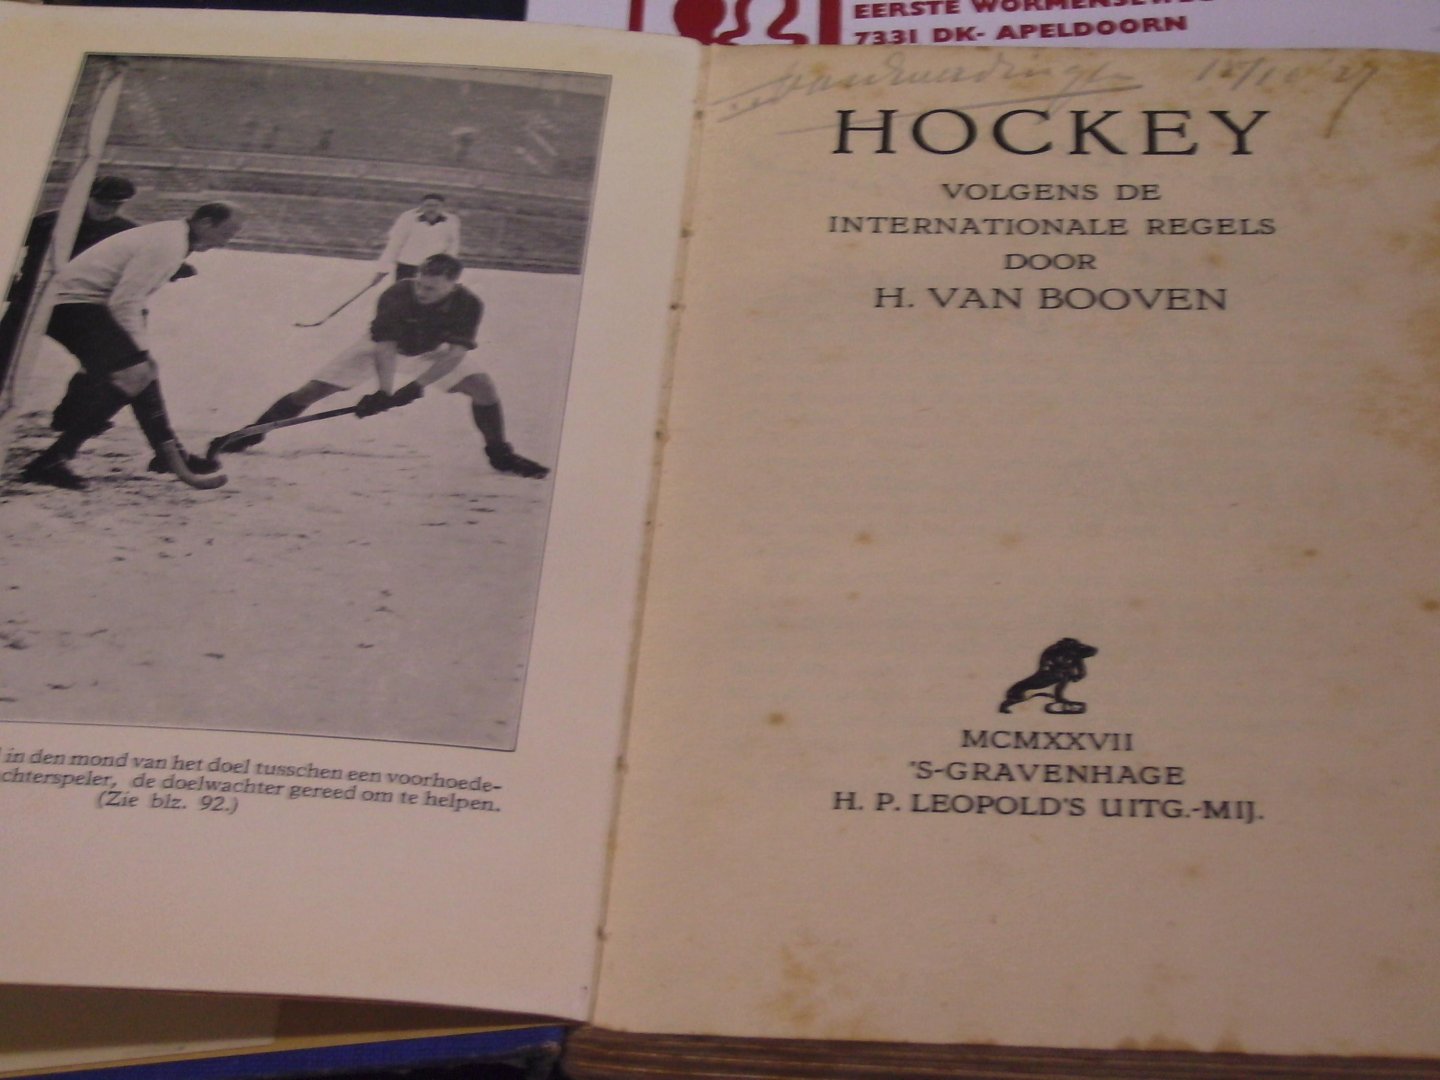 Booven, H.van - Hockey ; volgens de internationale regels ( 1927)